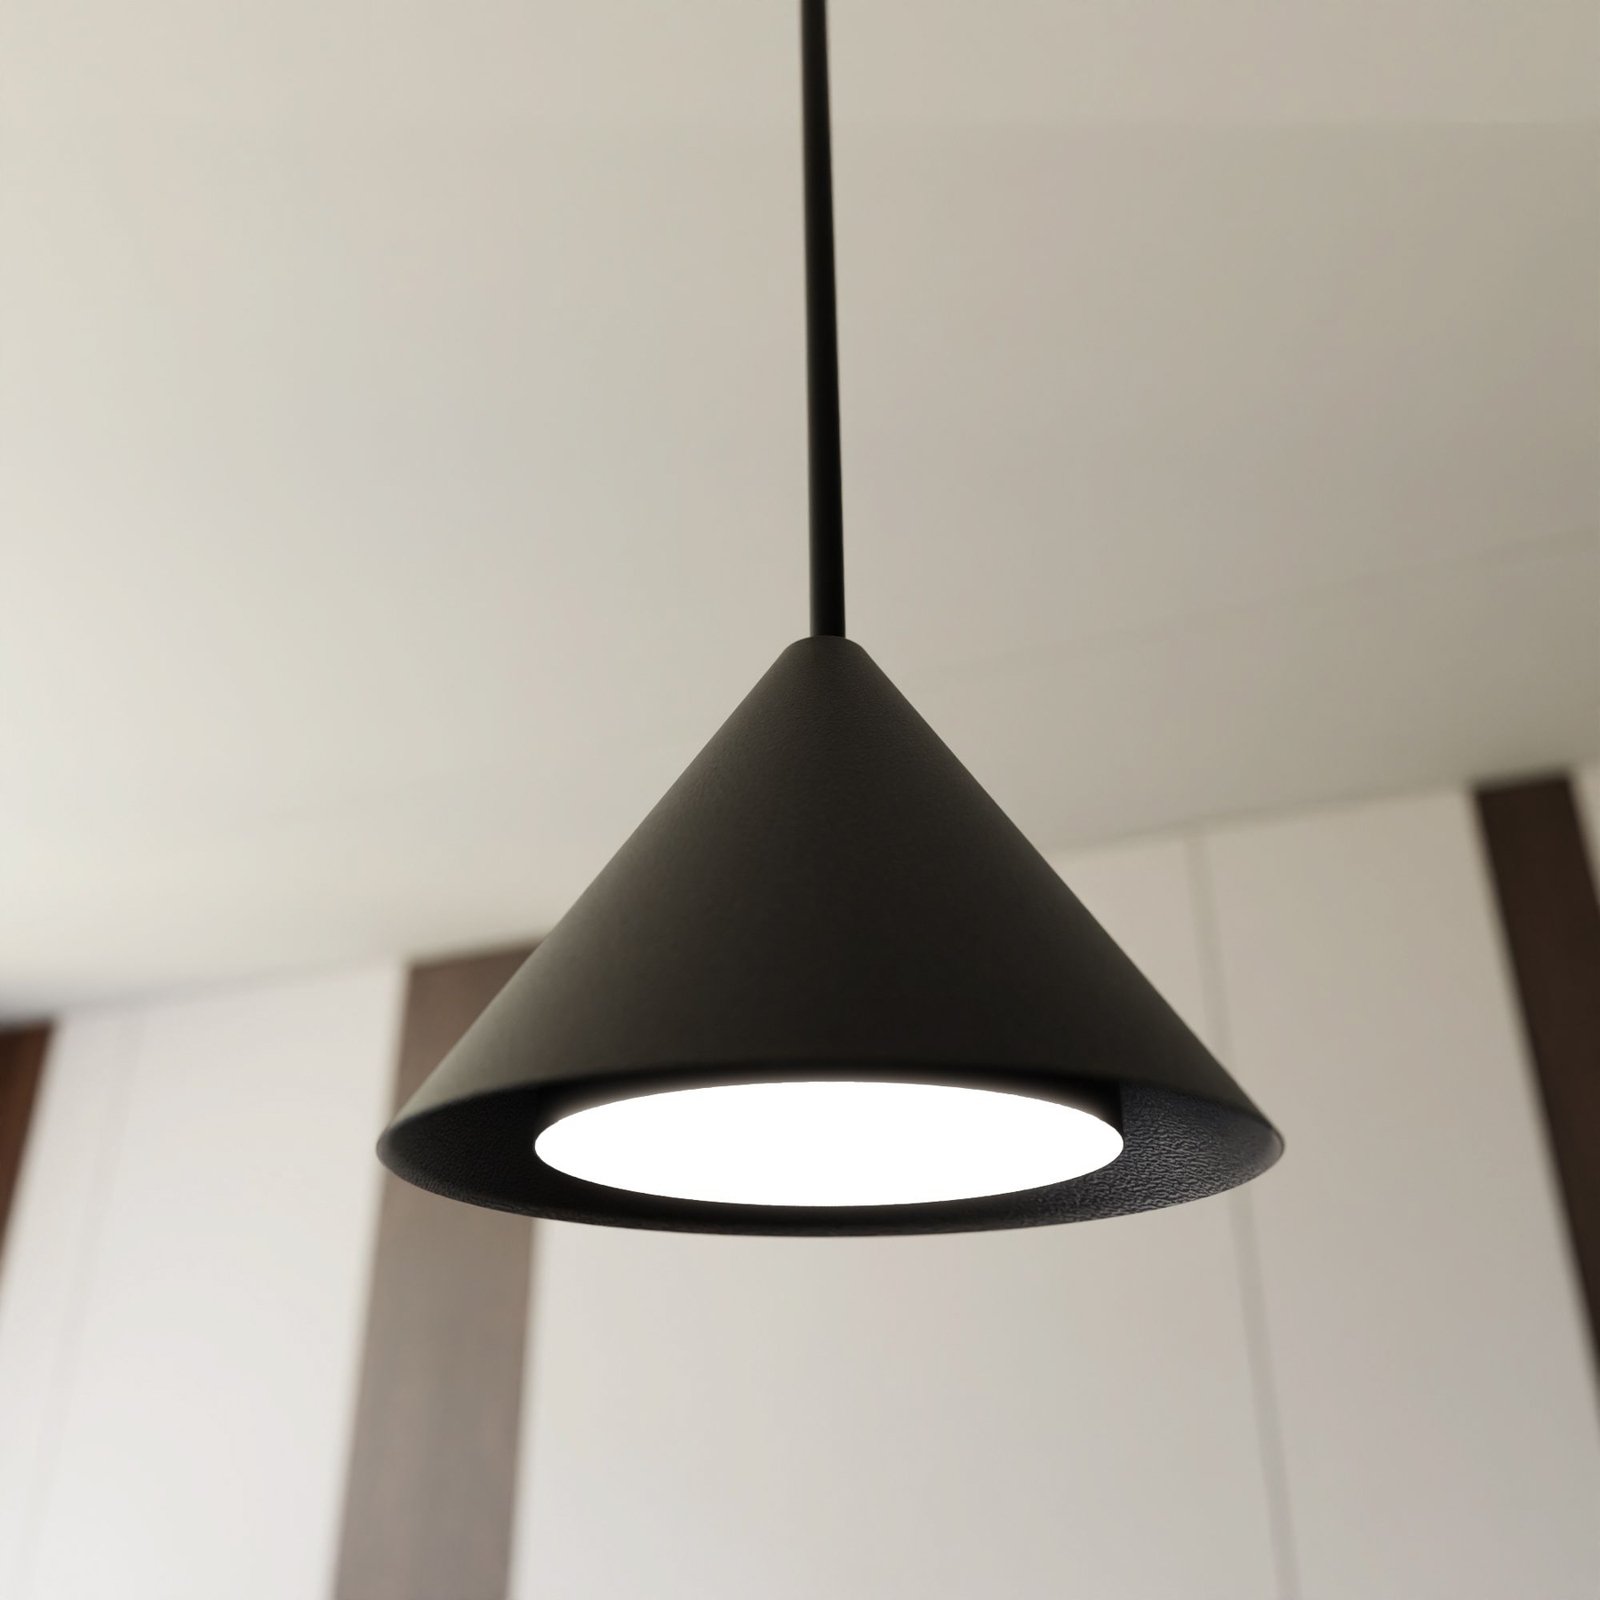 Elit pendant light, 6-bulb, black, metal